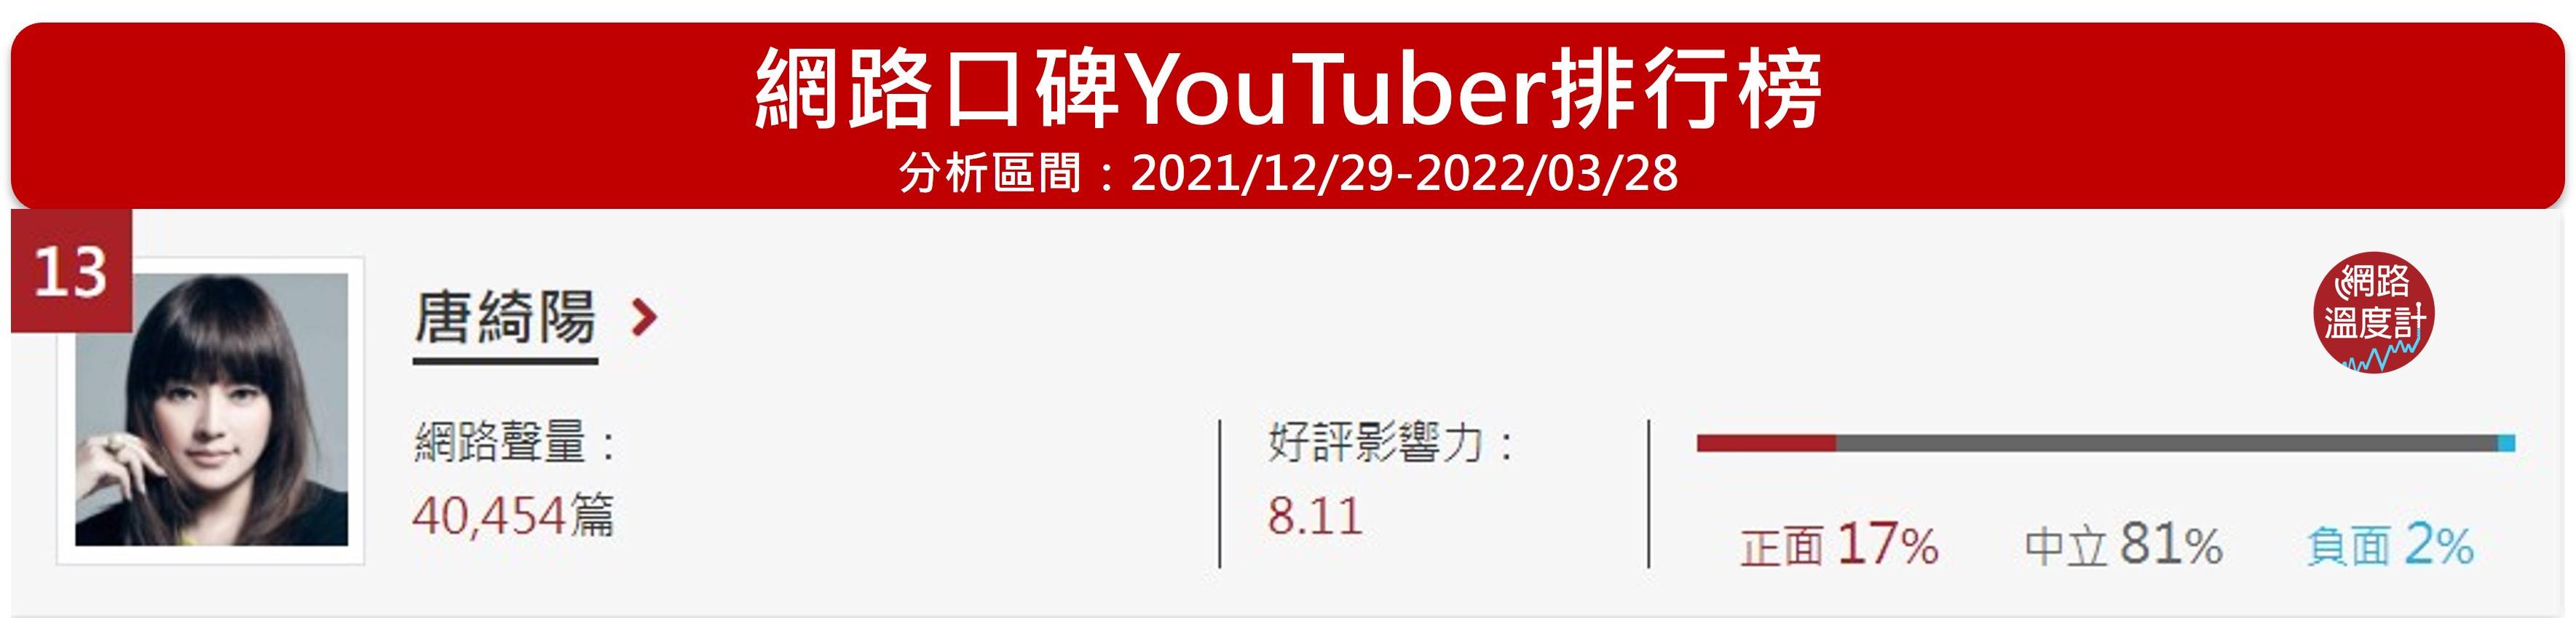 唐綺陽位居網路溫度計的YouTuber 網路口碑第13名。